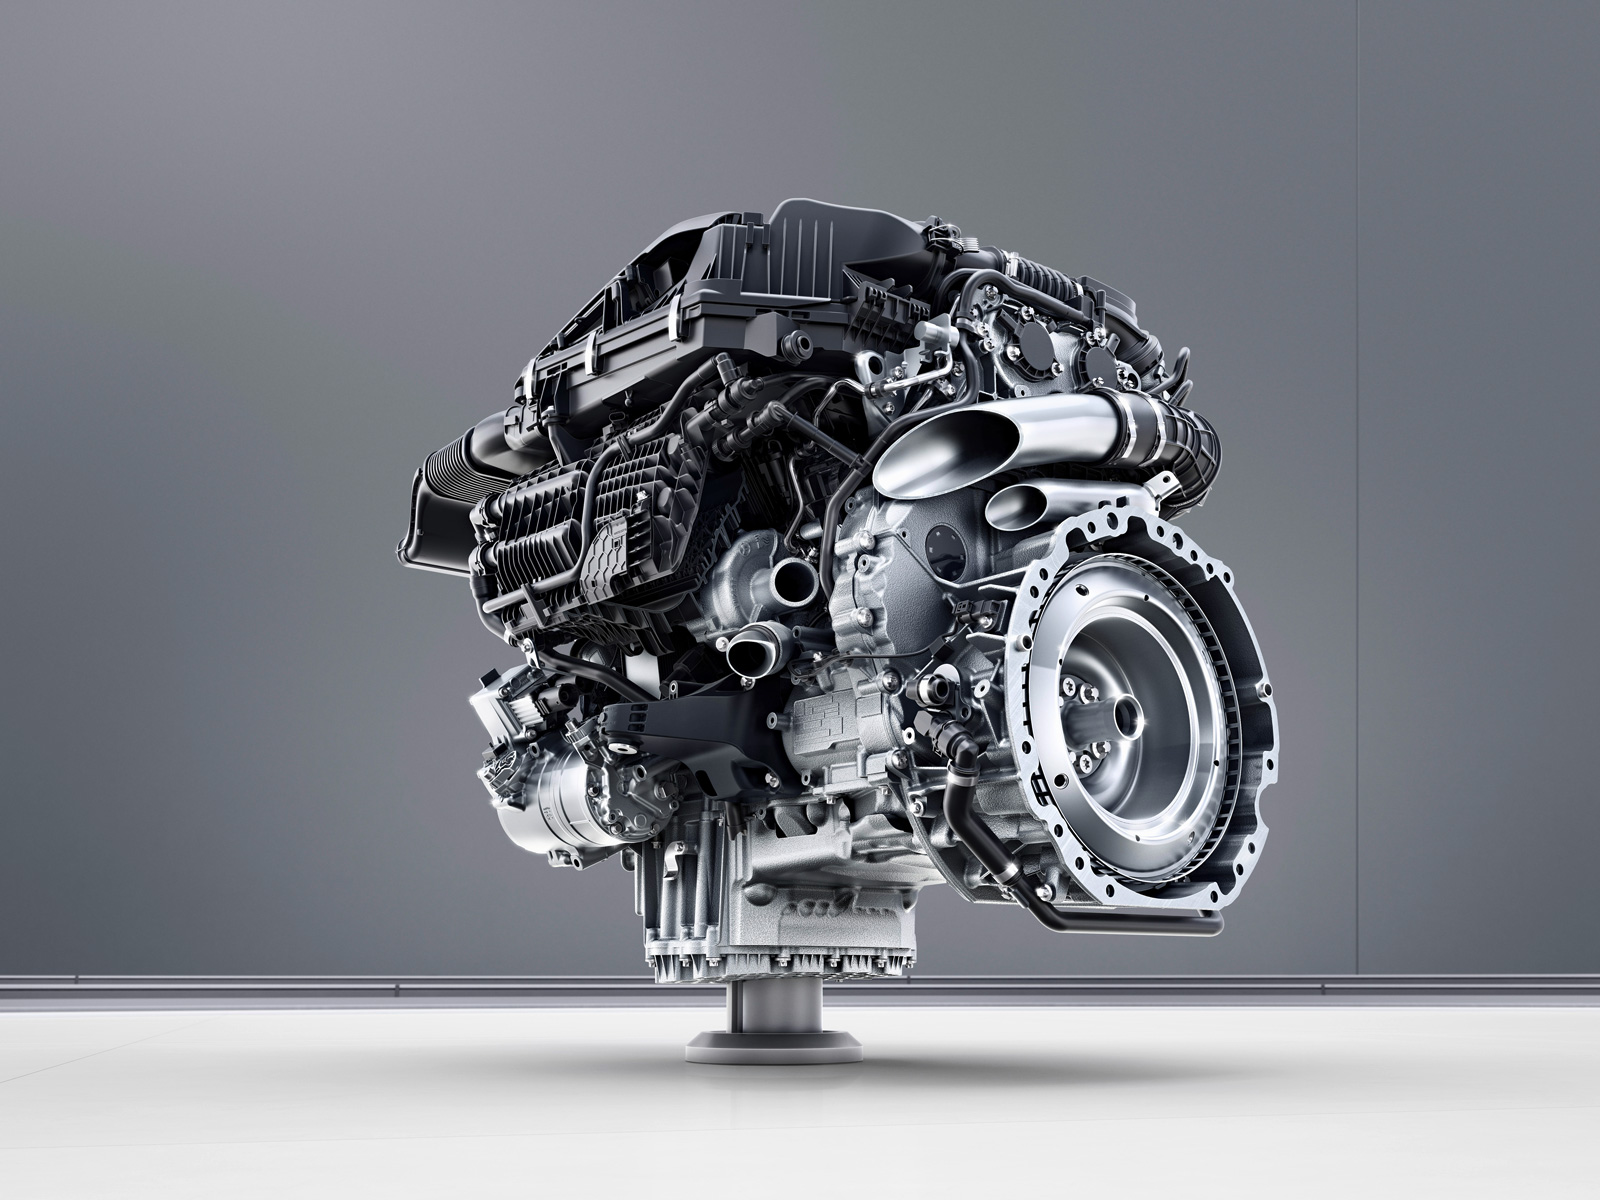 Mercedes introduceert de M256 zescilinder-in-lijn, met 48 volt systeem dat de grote verbruikers voedt. Denk aan waterpomp, aircocompressor en de geïntegreerde startergenerator die tussen motor en versnellingsbak komt. De waterpomp heeft meer dan twee maal de gangbare pompcapaciteit. De motor is verrassend compact, mede omdat er door die 48 volt-techniek geen aandrijfriemen voor de aggregaten voorop de motor zitten.